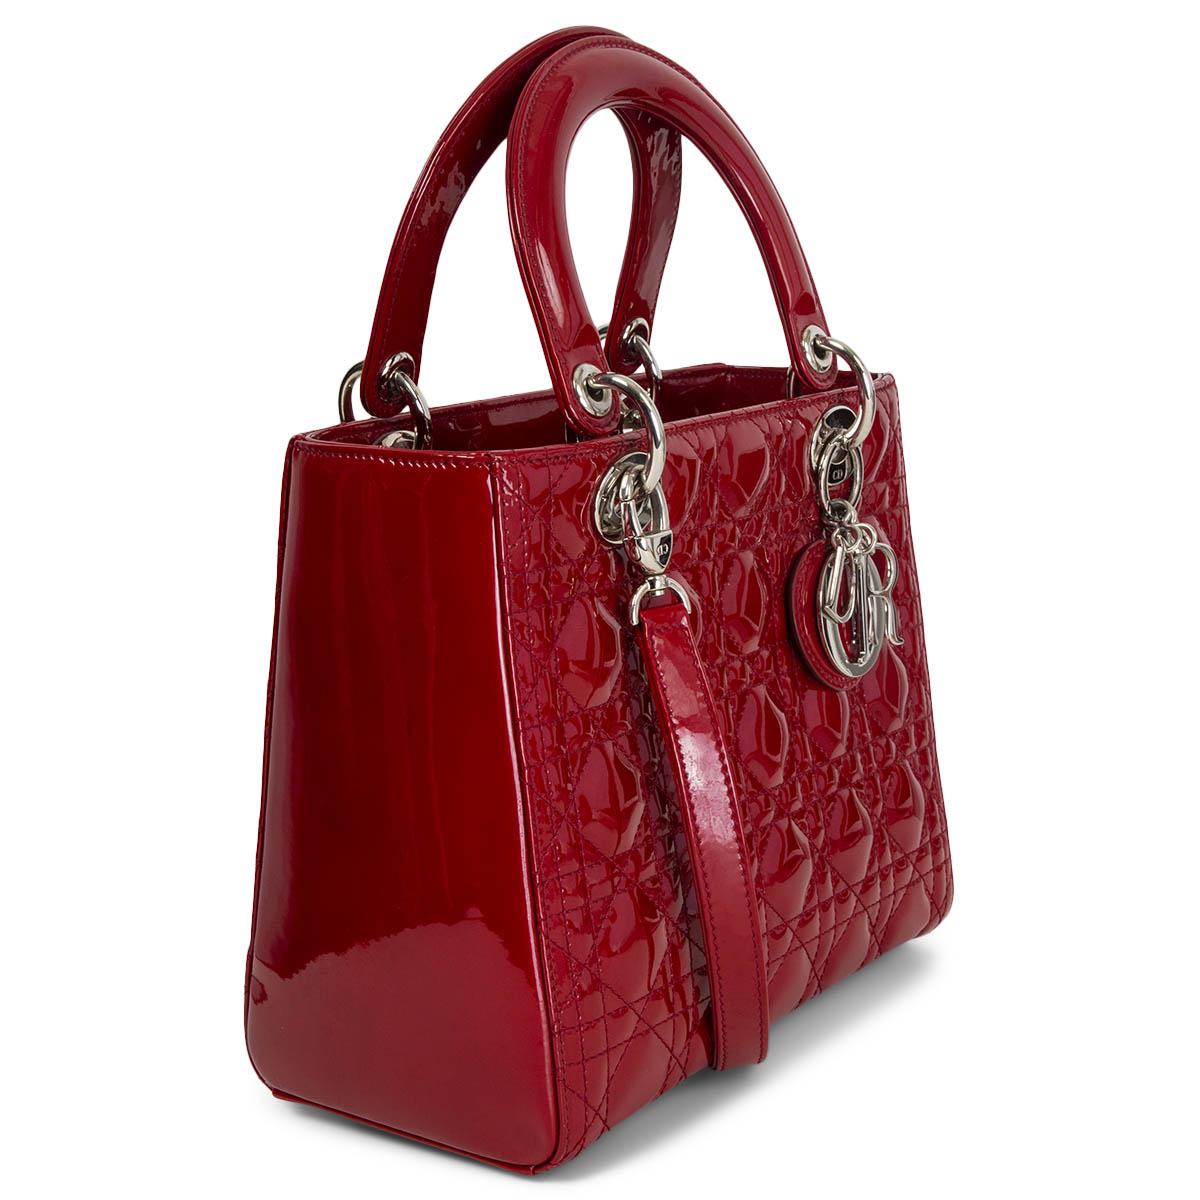 100% authentique Christian Dior Le sac Medium Lady Dior est fabriqué en veau verni rouge bordeaux avec des surpiqûres Cannage signature. La quincaillerie en métal argenté et les breloques 